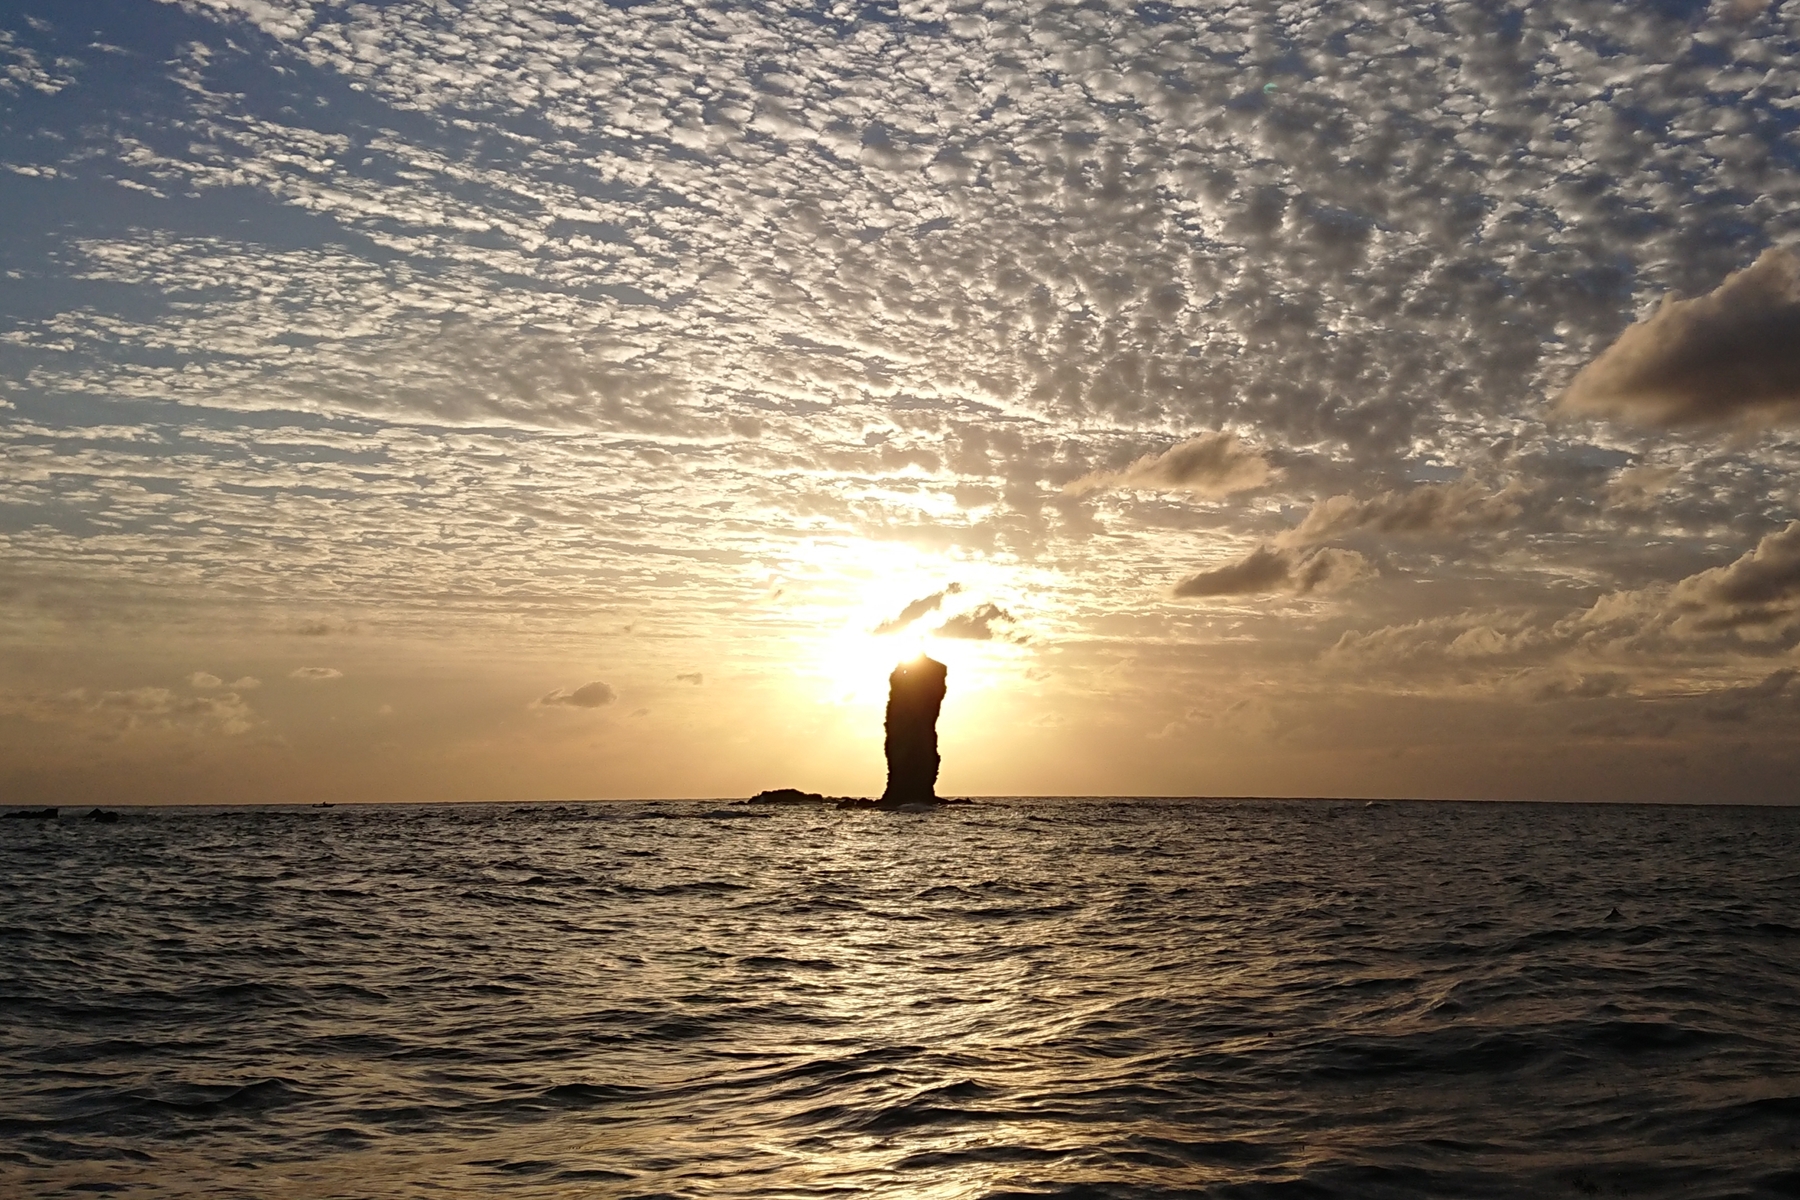 奇跡の絶景「ローソク島遊覧船」